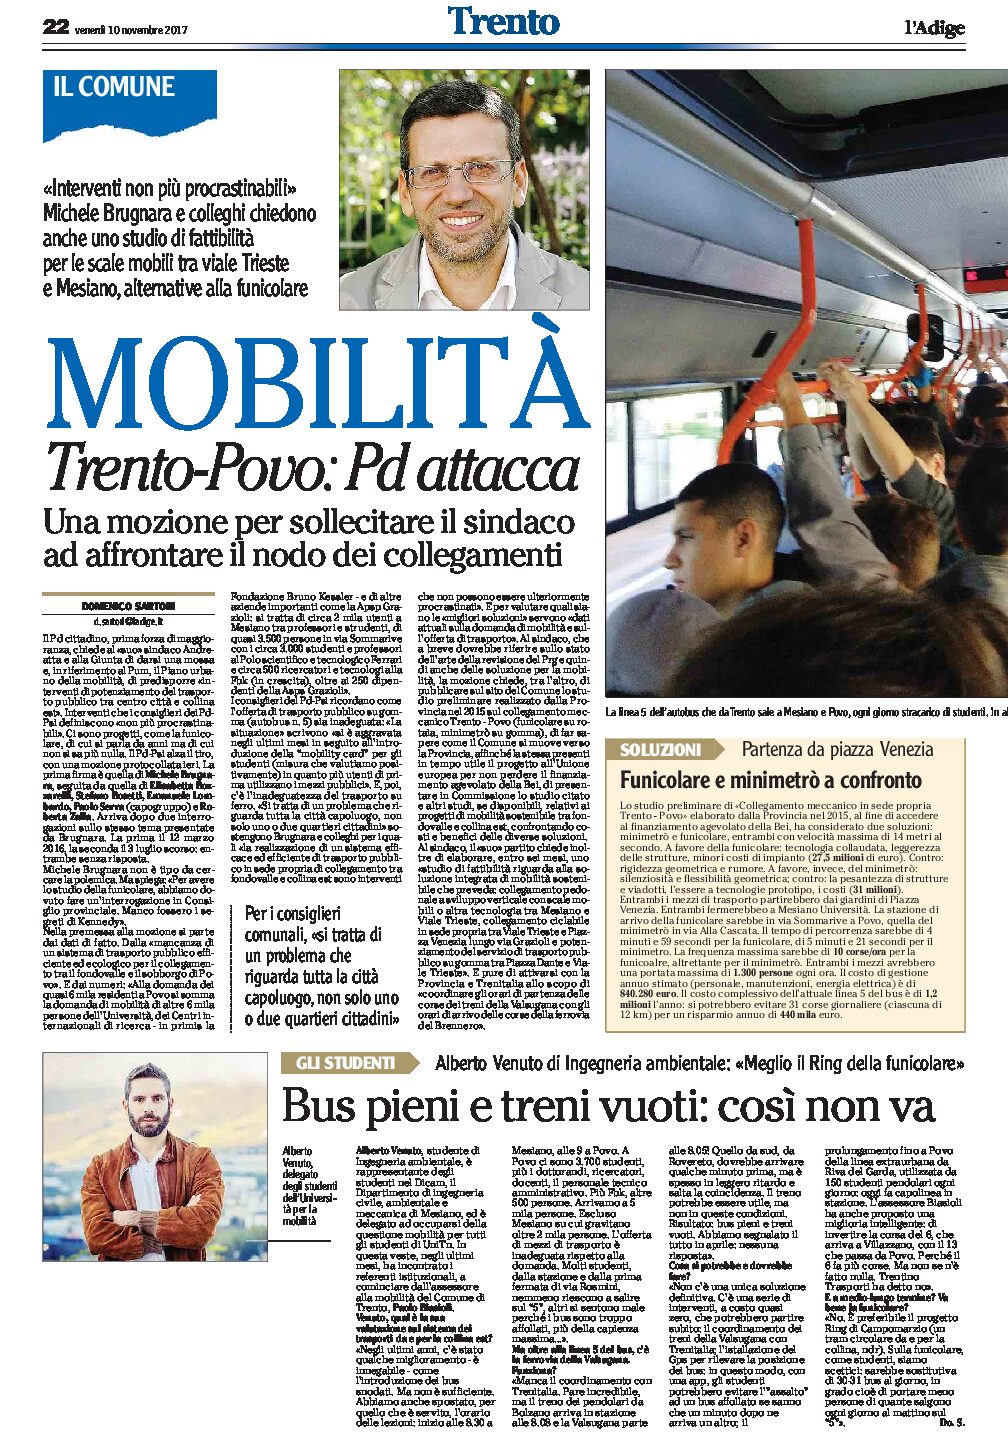 Mobilità: Trento-Povo, Pd attacca. Gilmozzi “Nordus prioritario”